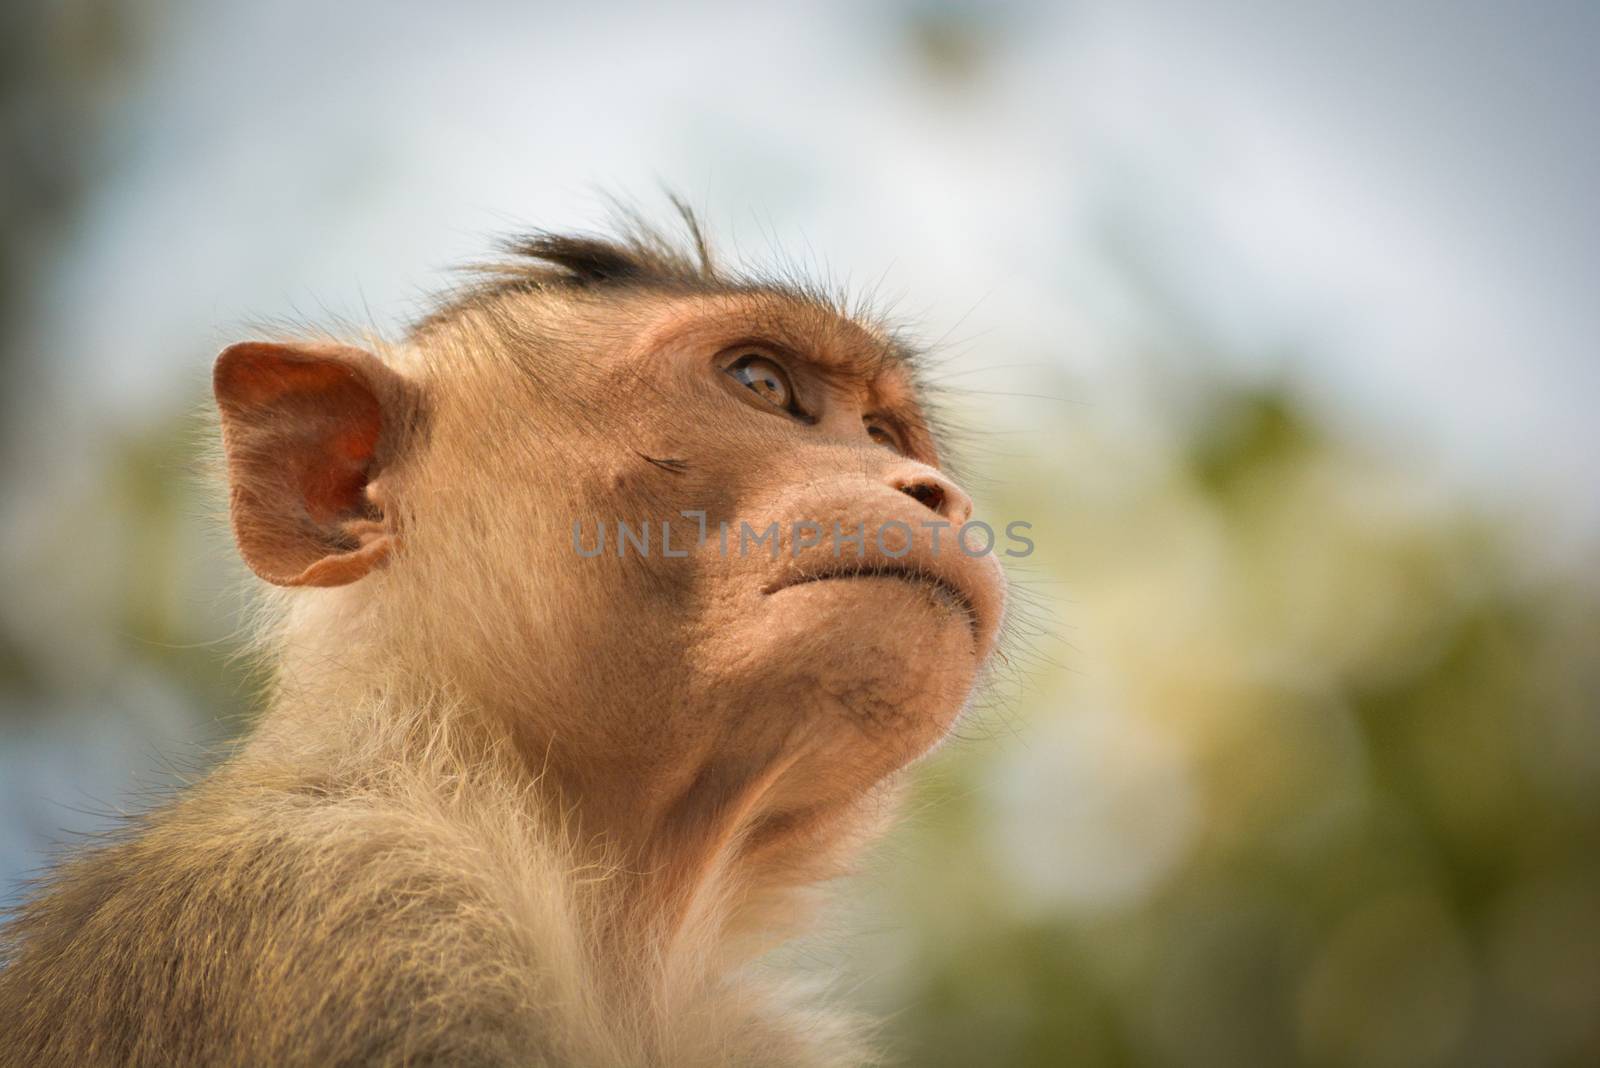 portrait of bonnet macaque monkey by lakshmiprasad.maski@gmai.com